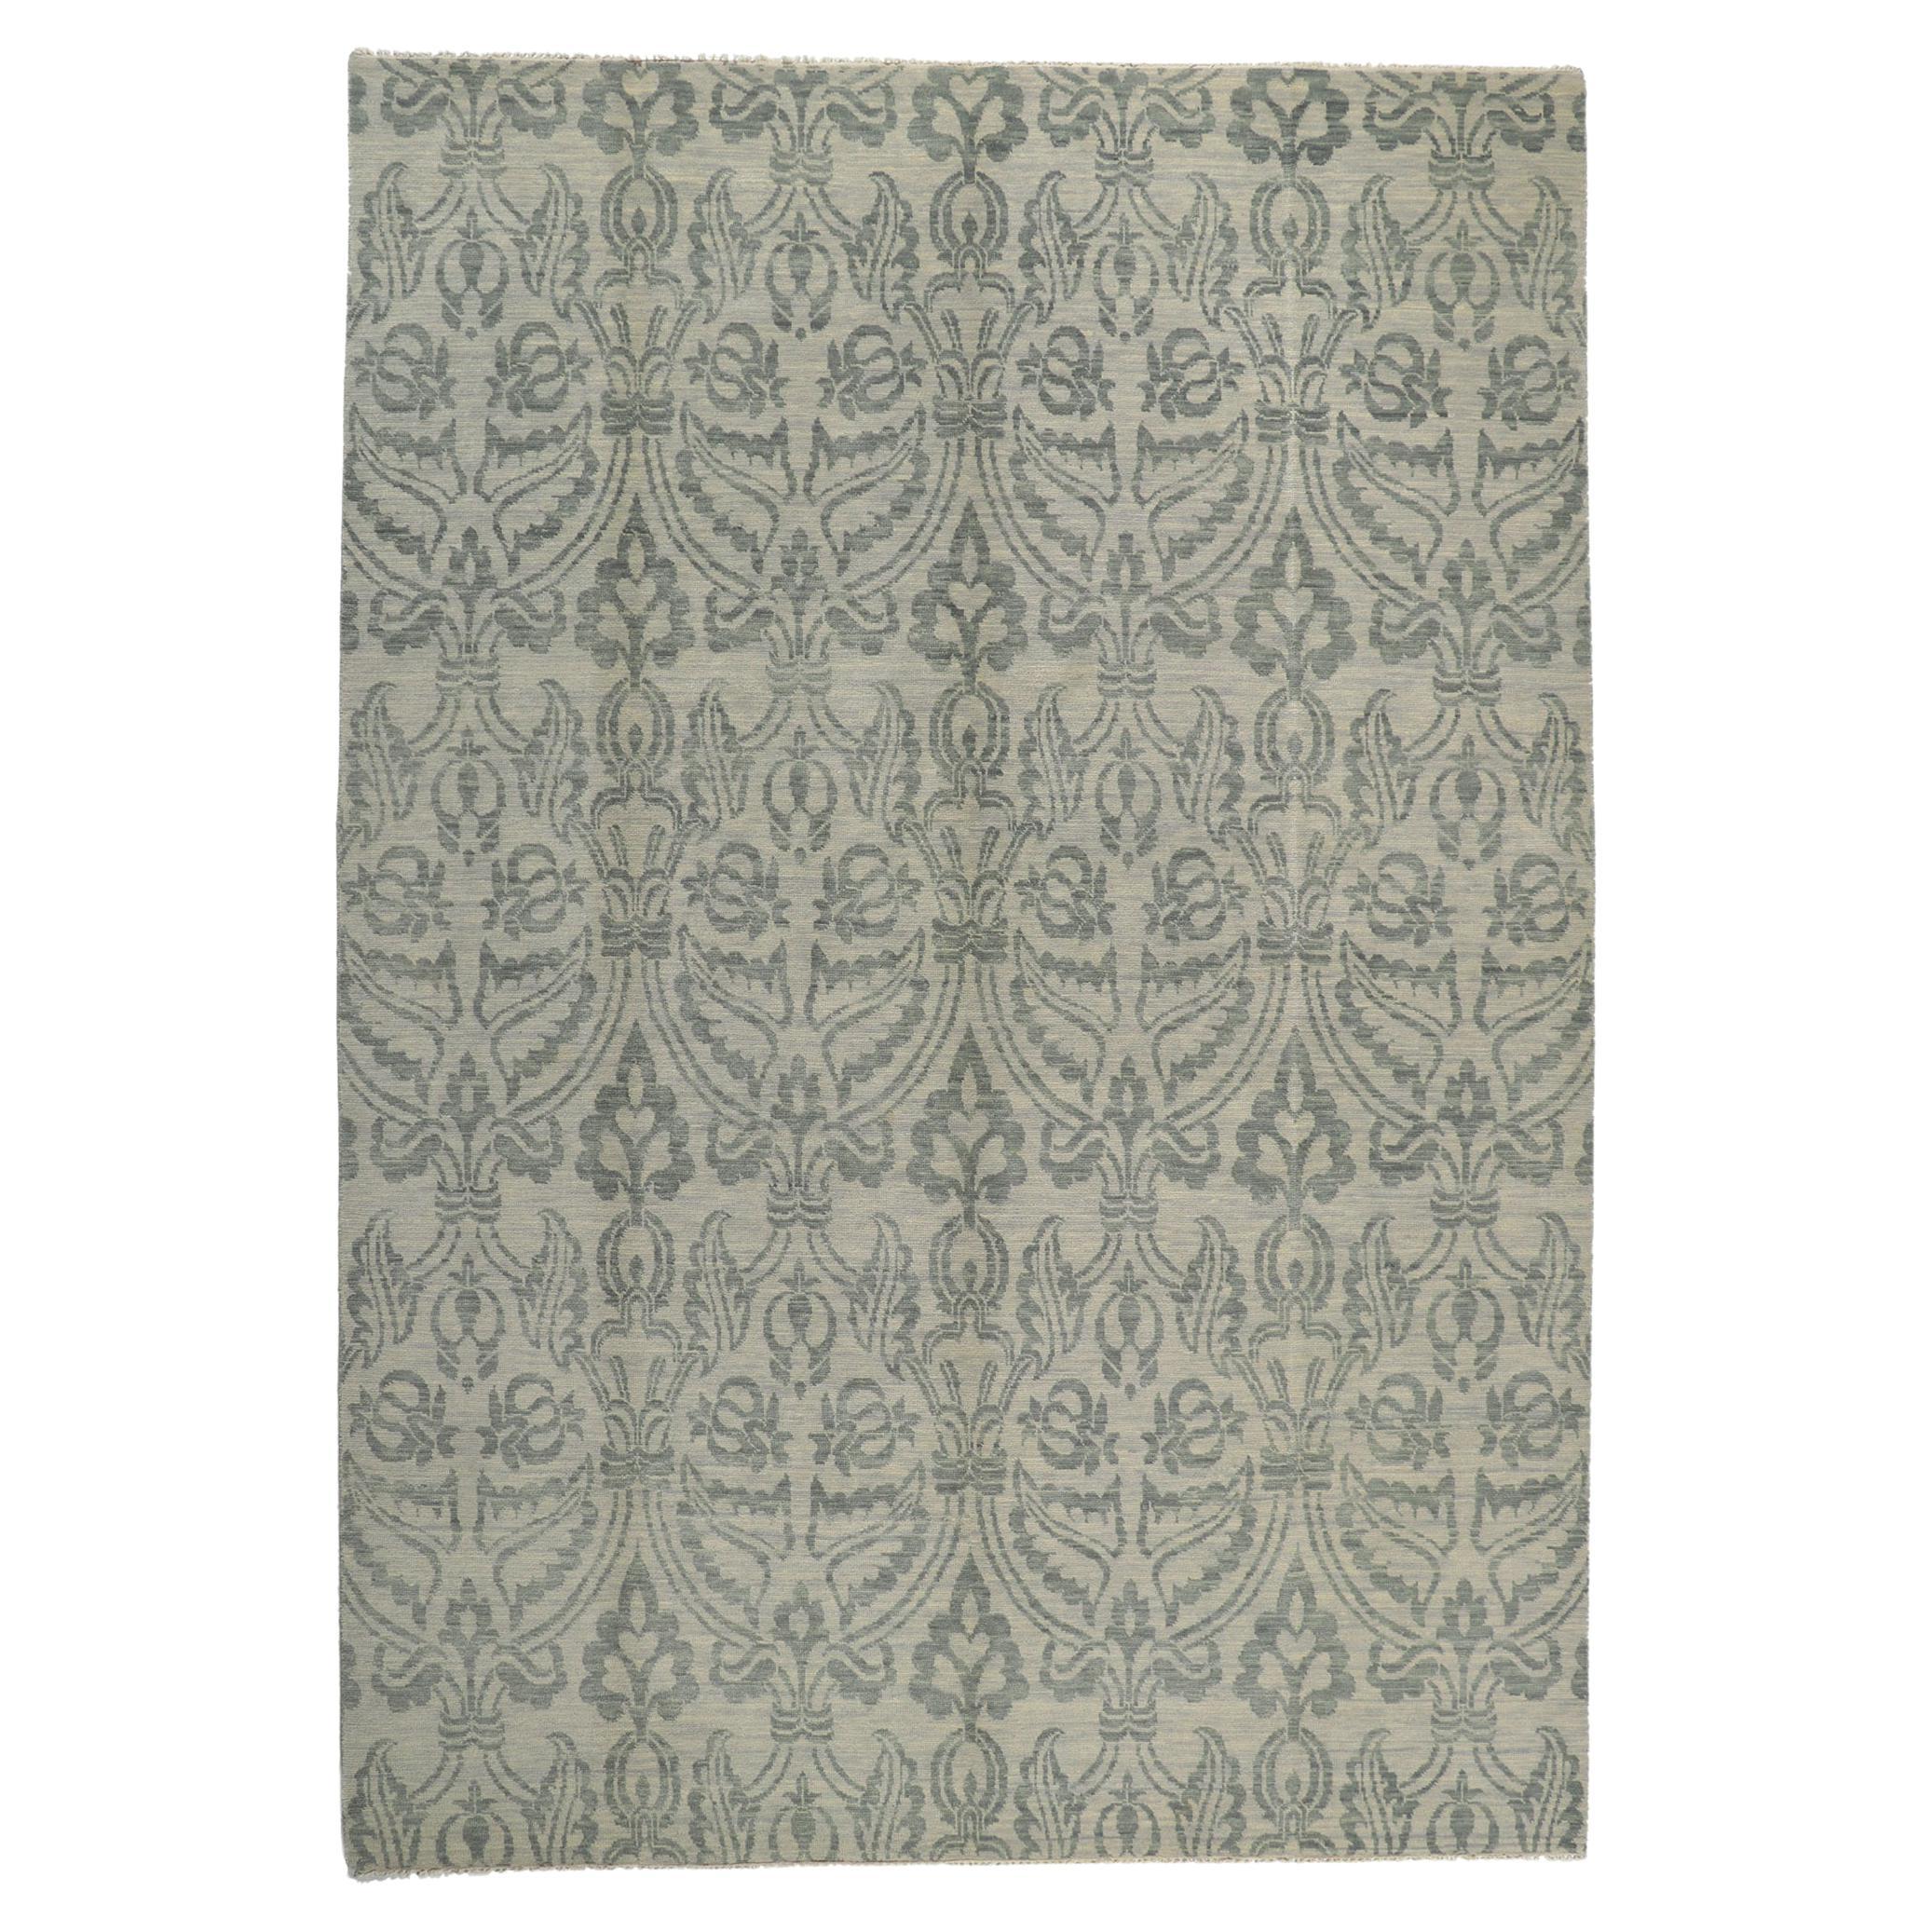 Ikat-Teppich aus Damast im Übergangsstil mit blauen und grauen Erdtönen